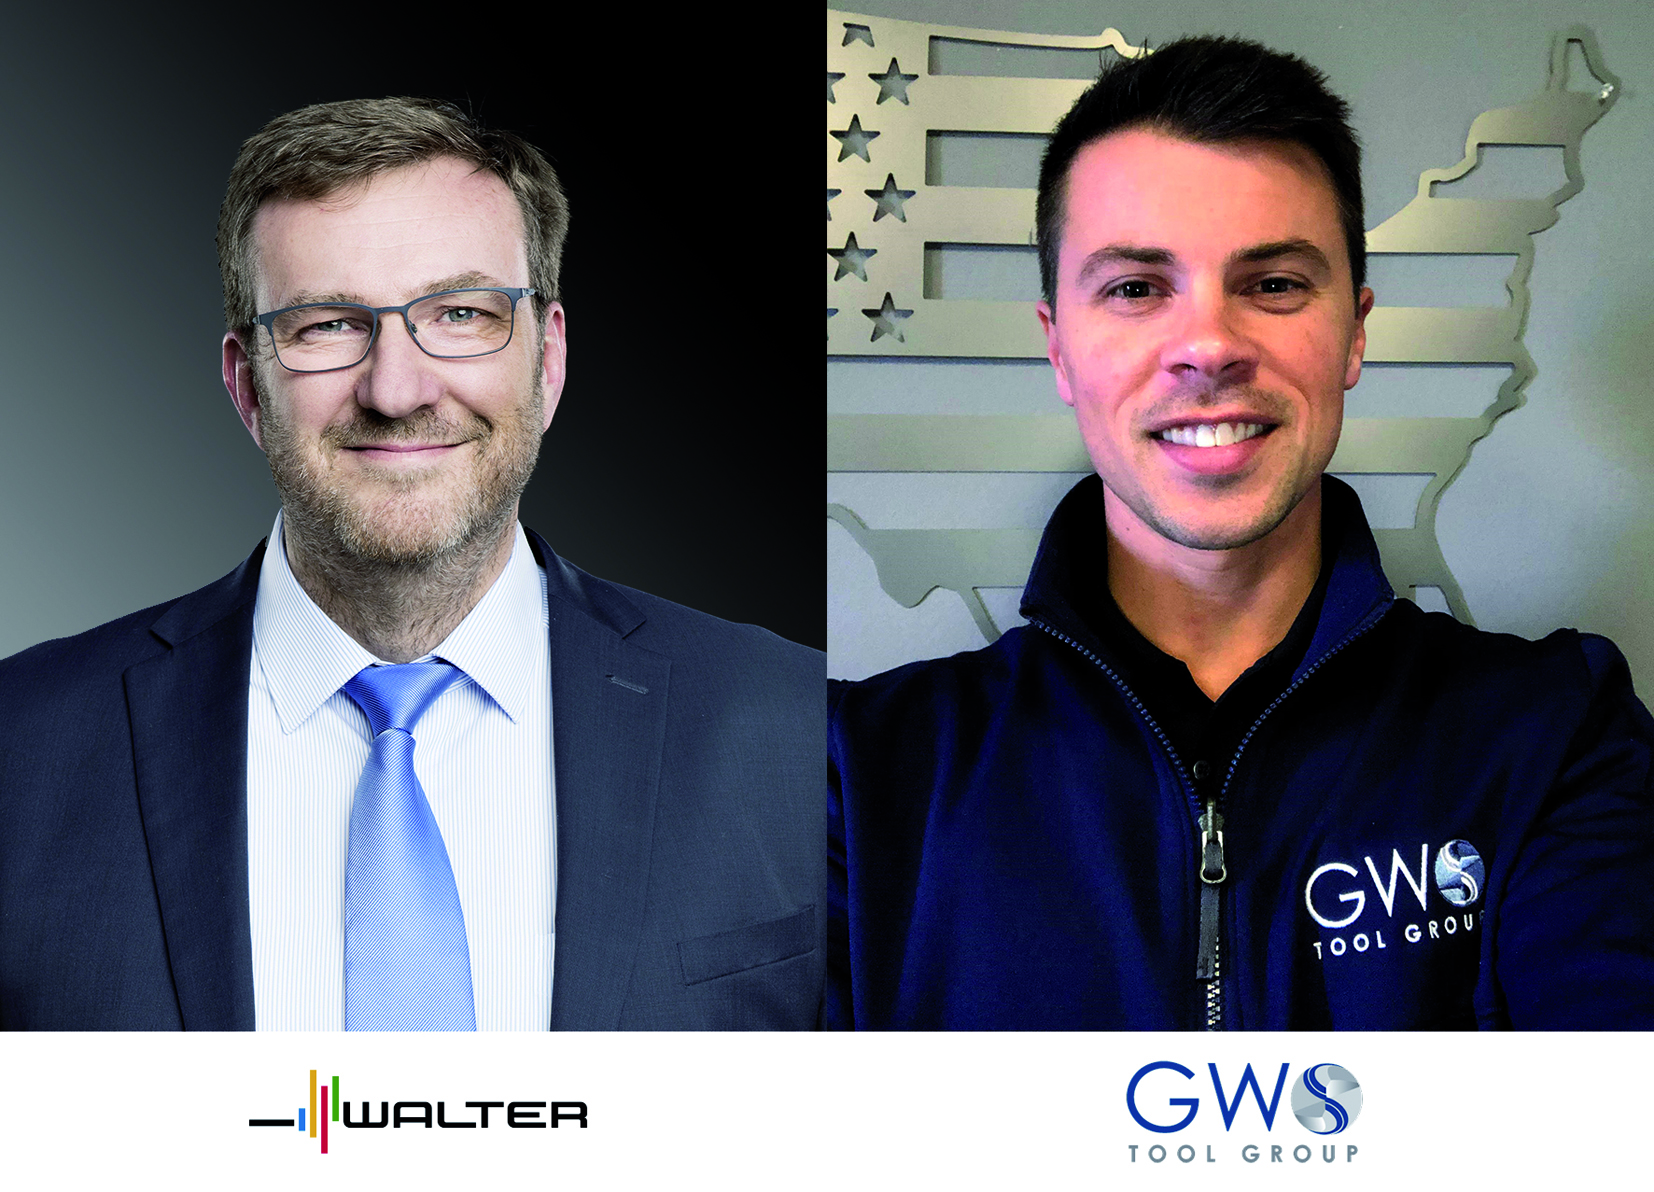 Walter übernimmt den amerikanischen Werkzeughersteller GWS Tool Group